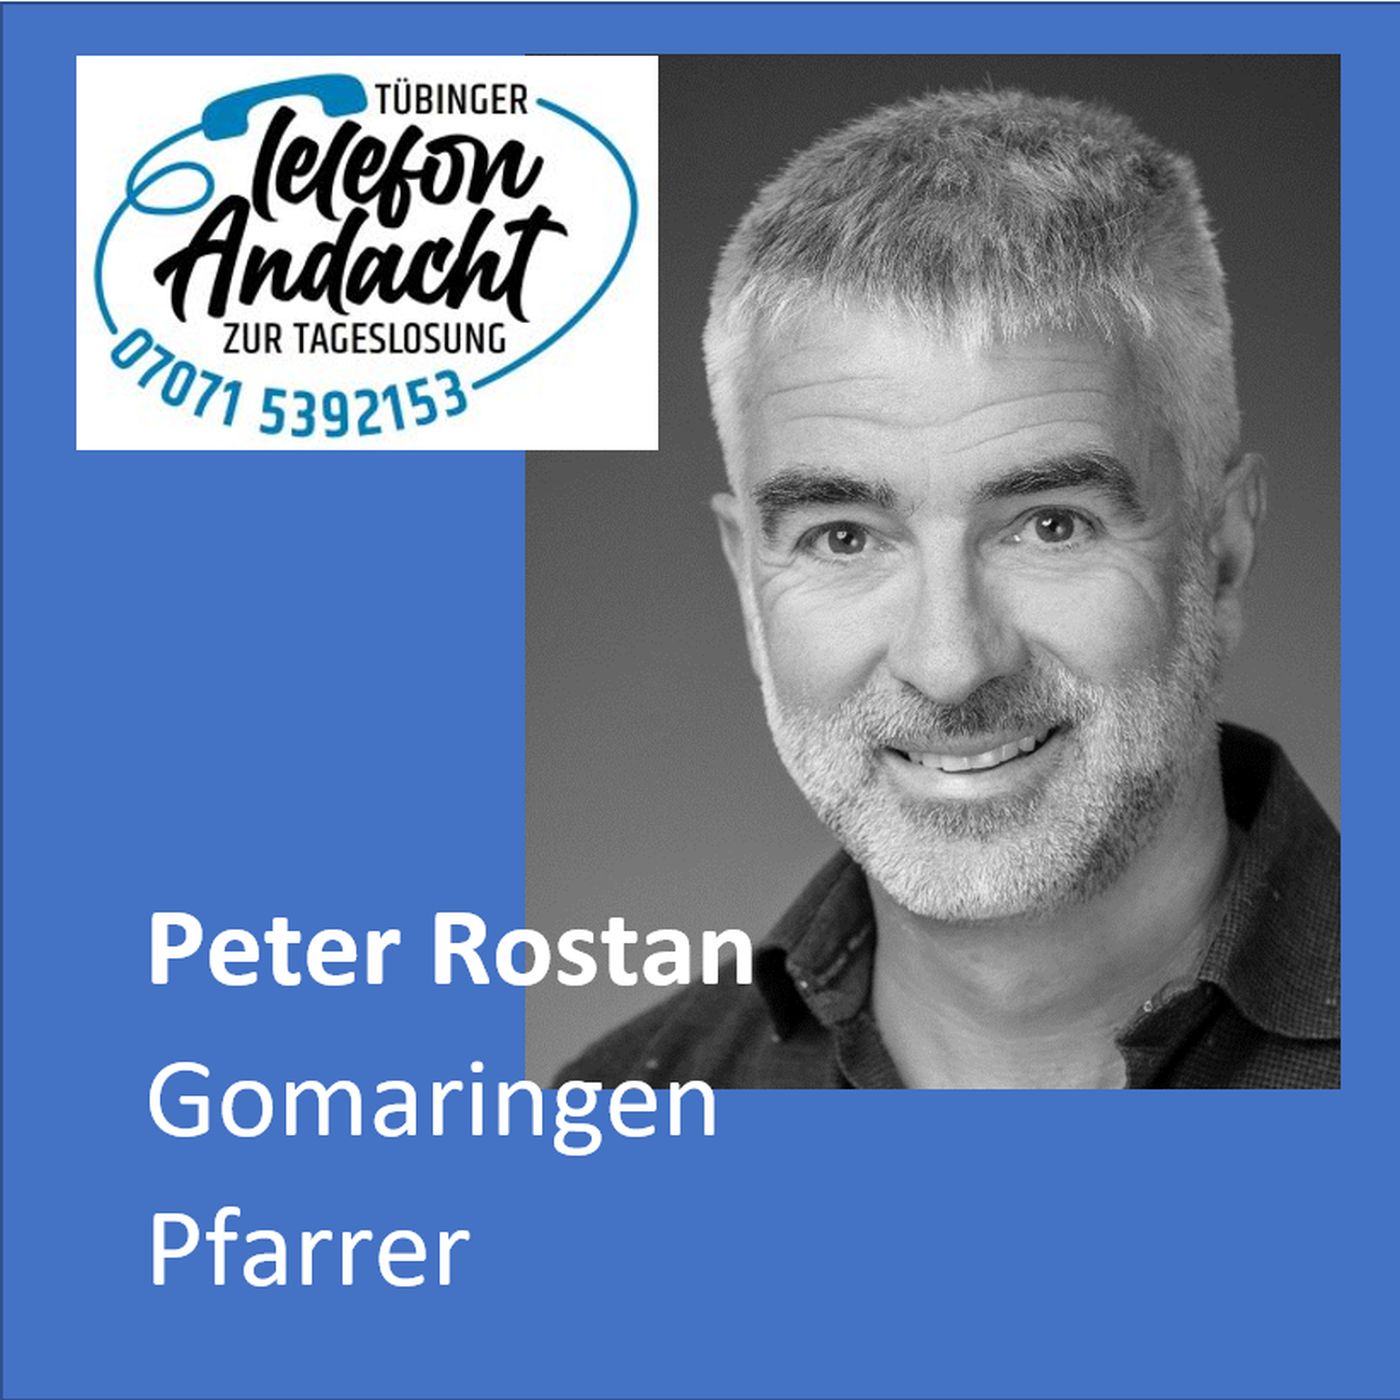 24 07 25 Peter Rostan